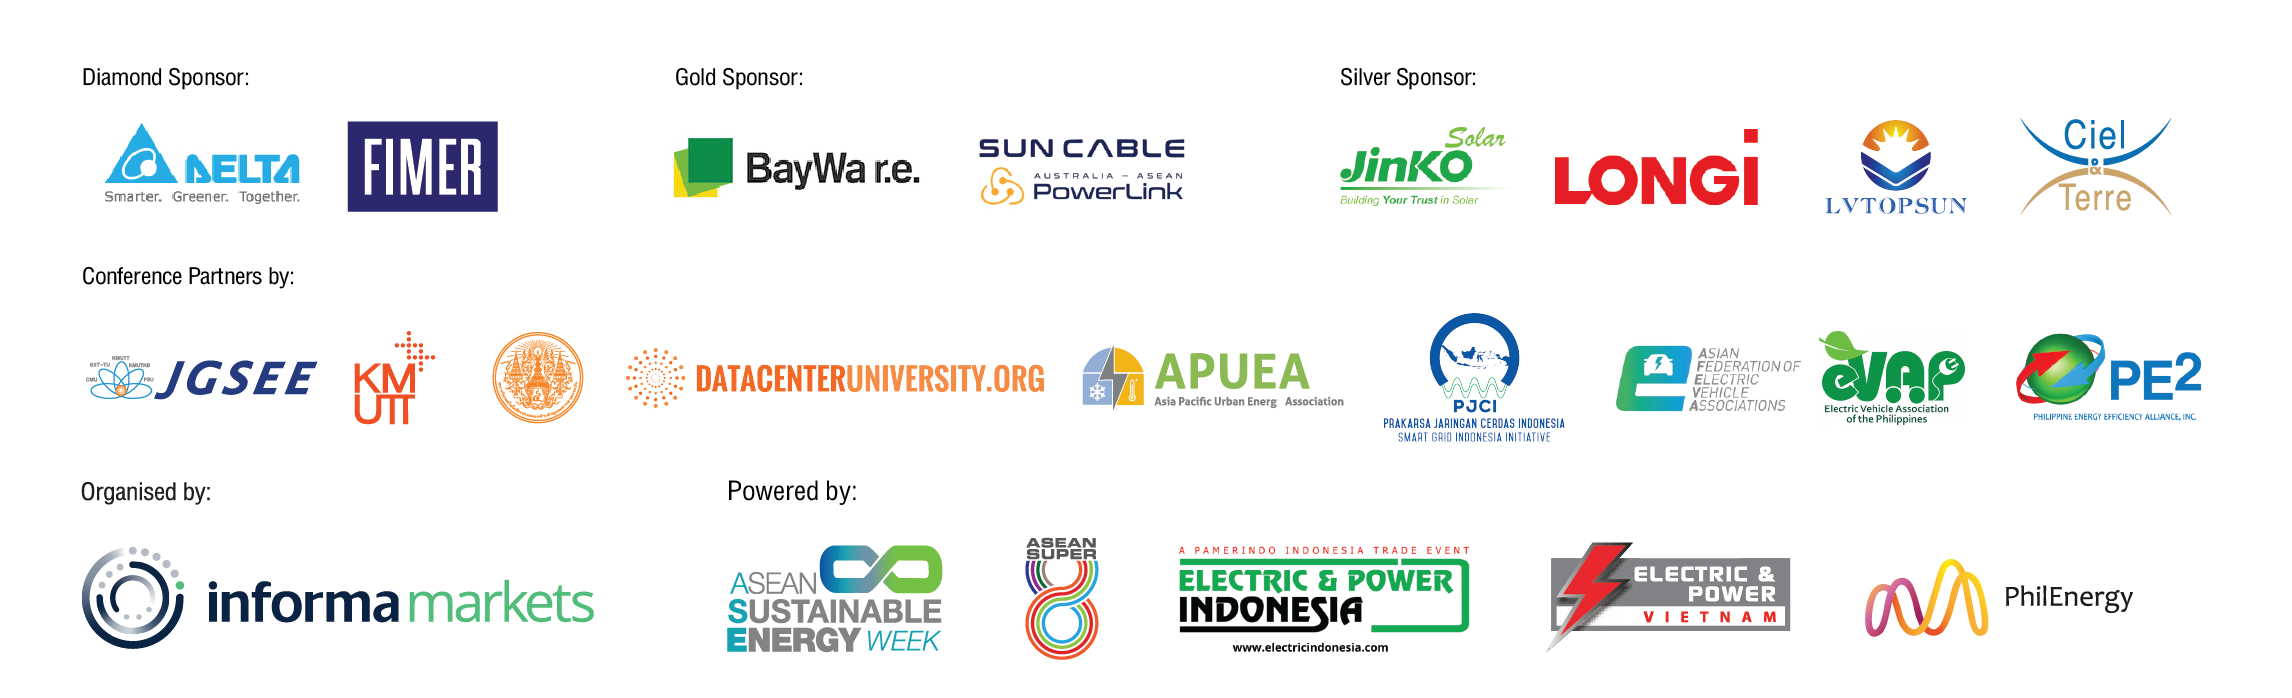 ASEAN Energy & Utilities Digital Week (AEUDW)